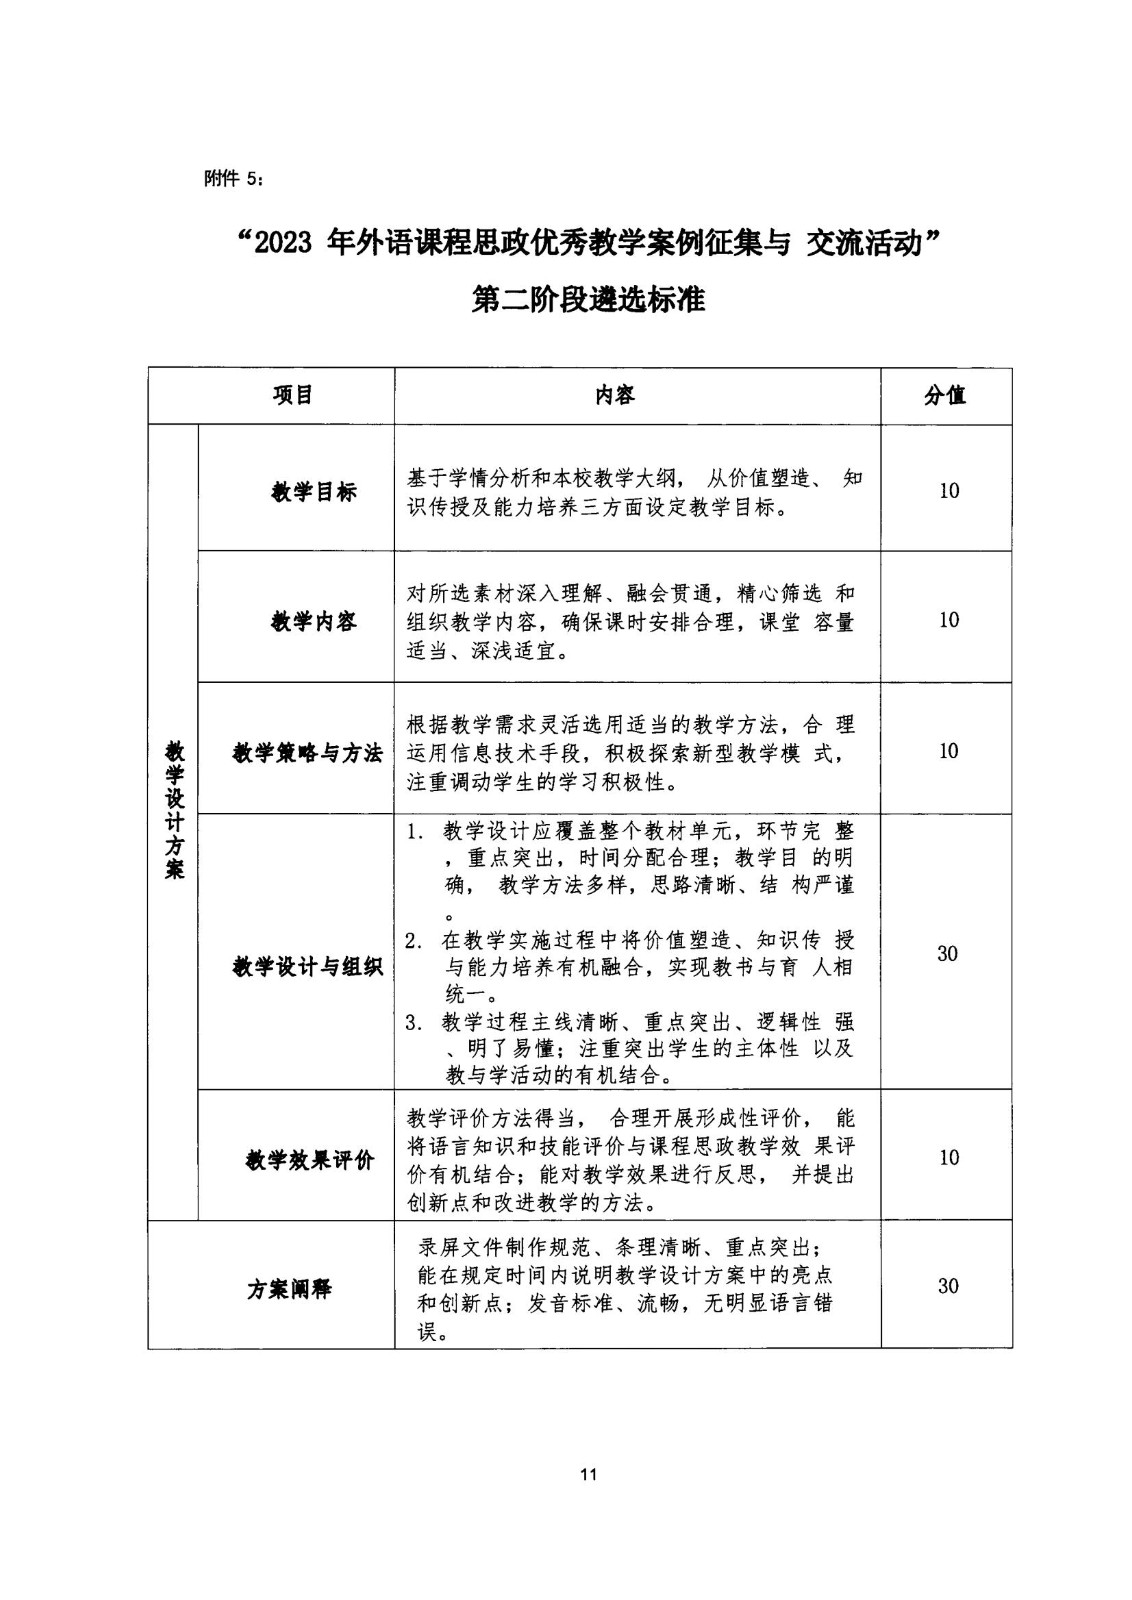 关于开展2023年上海市高职高专英语课程思政优秀教学案例征集与交流活动的通知_10.jpg